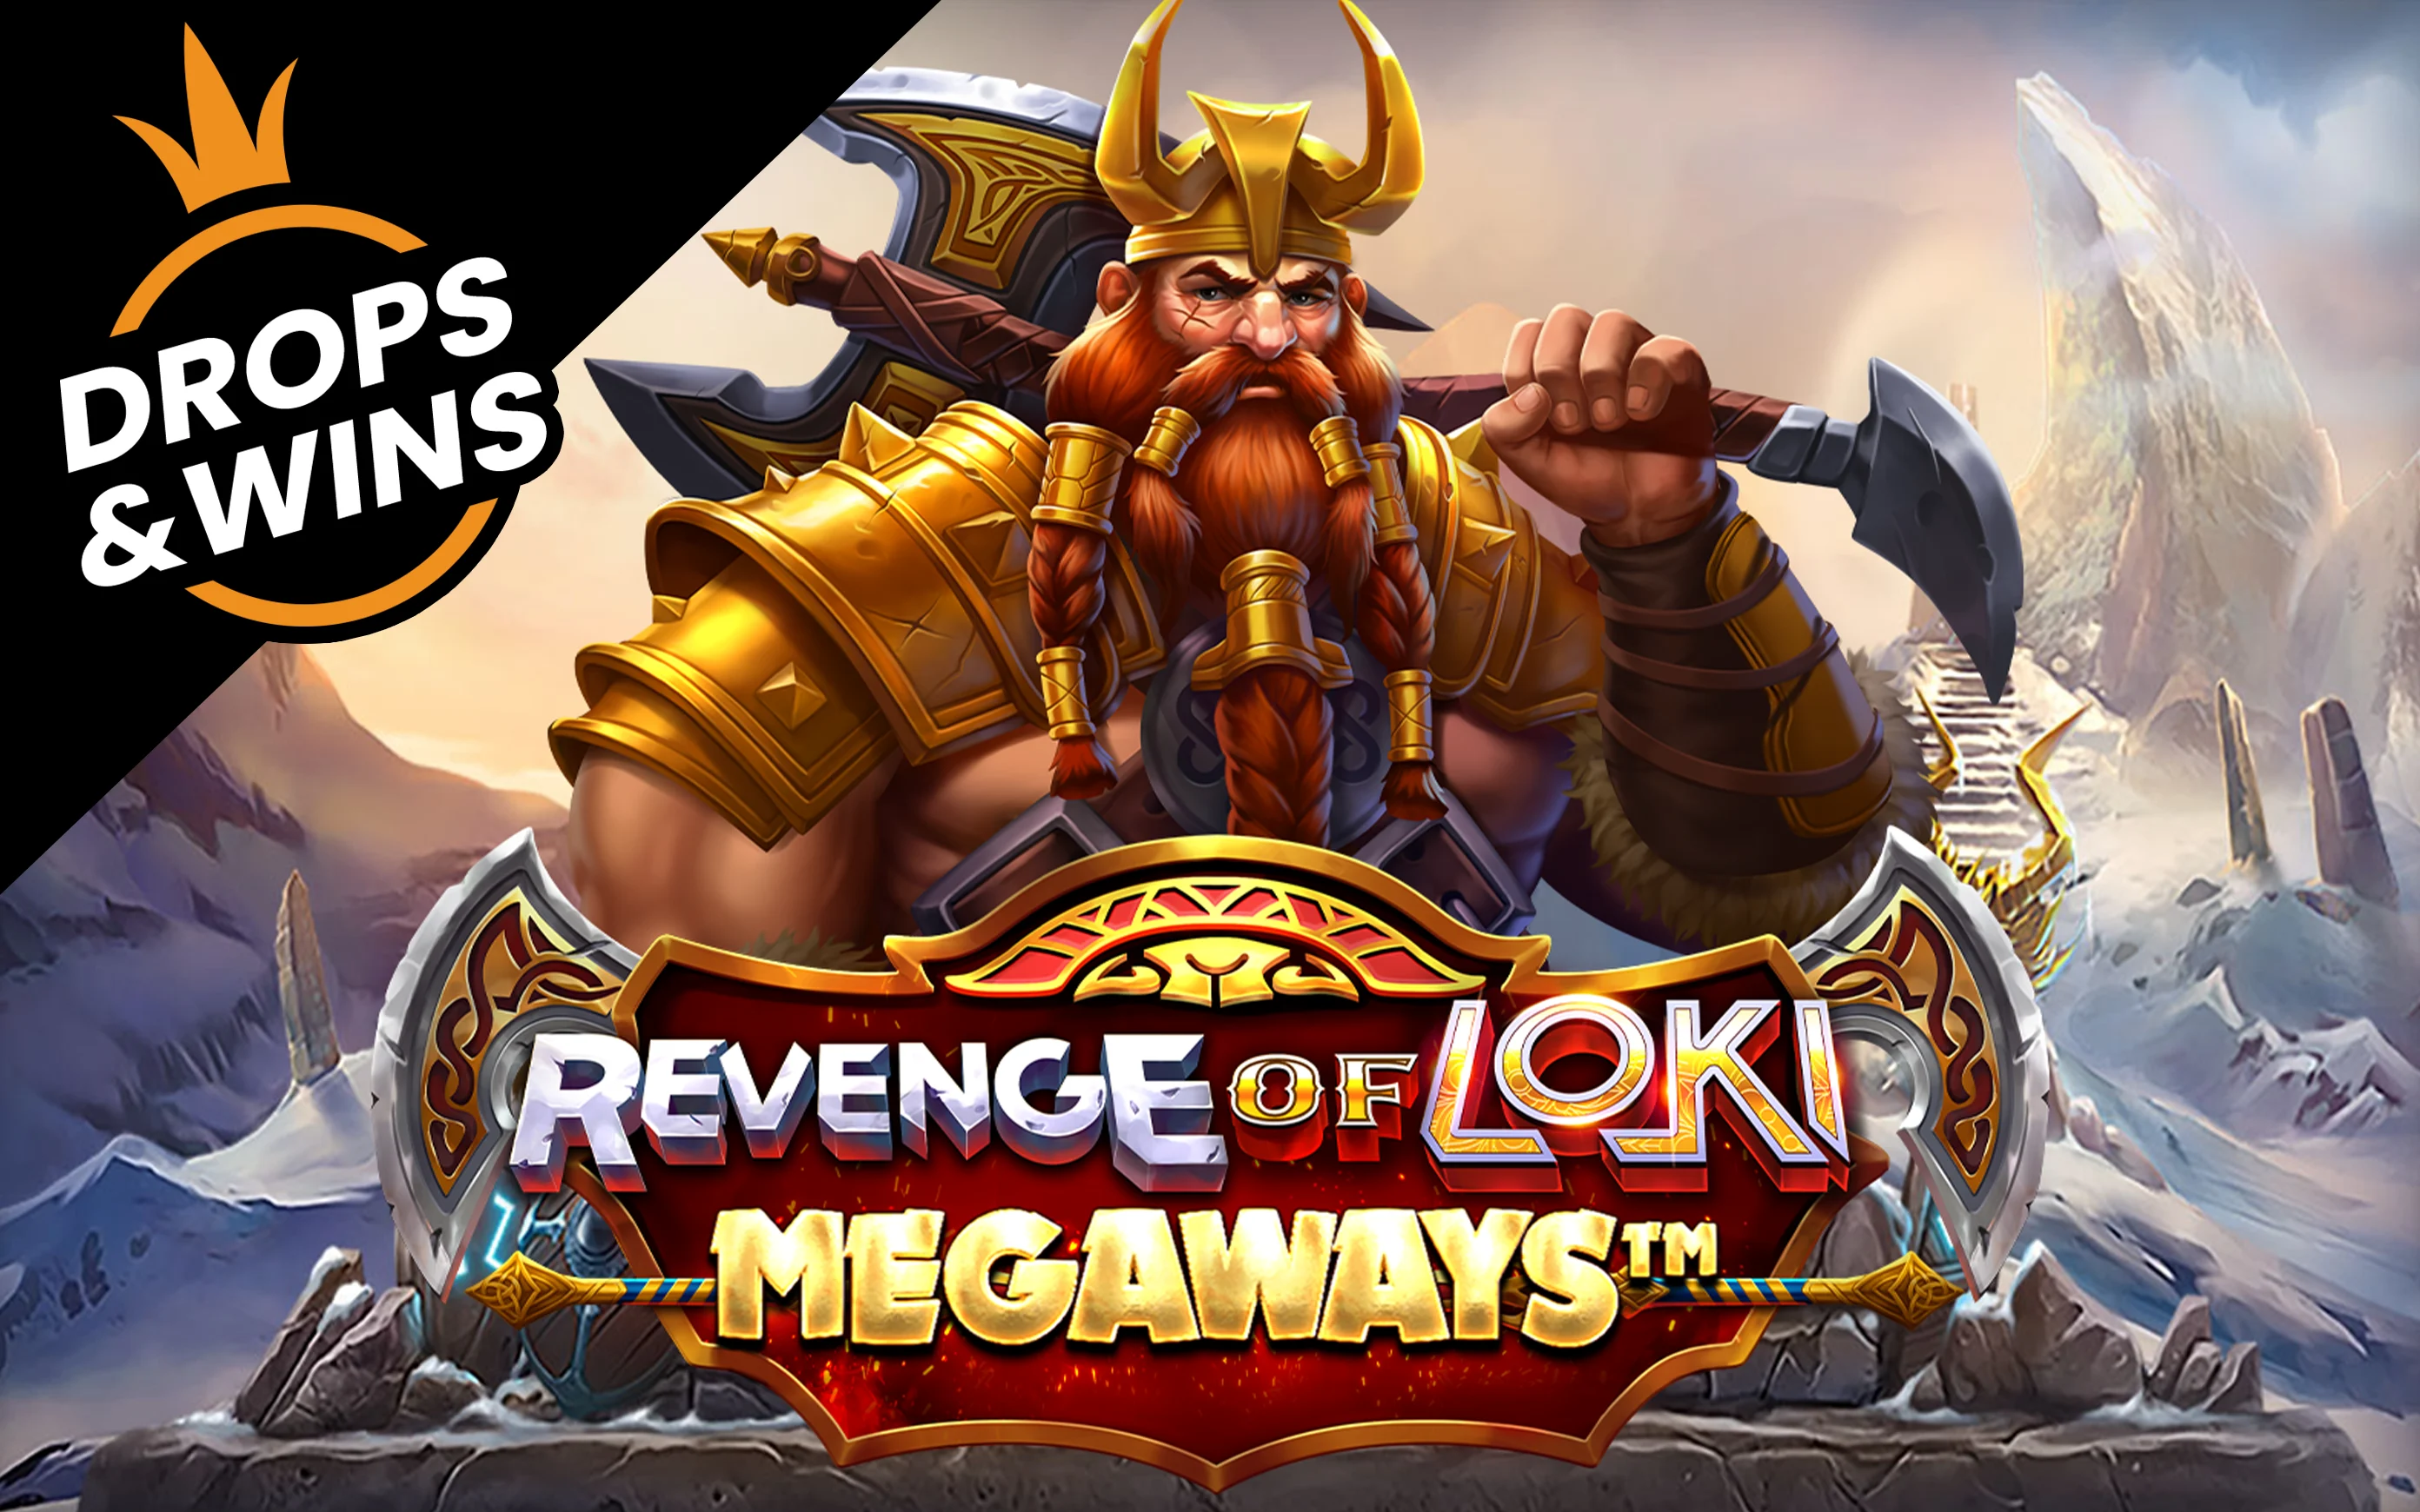 Zagraj w Revenge of Loki Megaways w kasynie online Starcasino.be